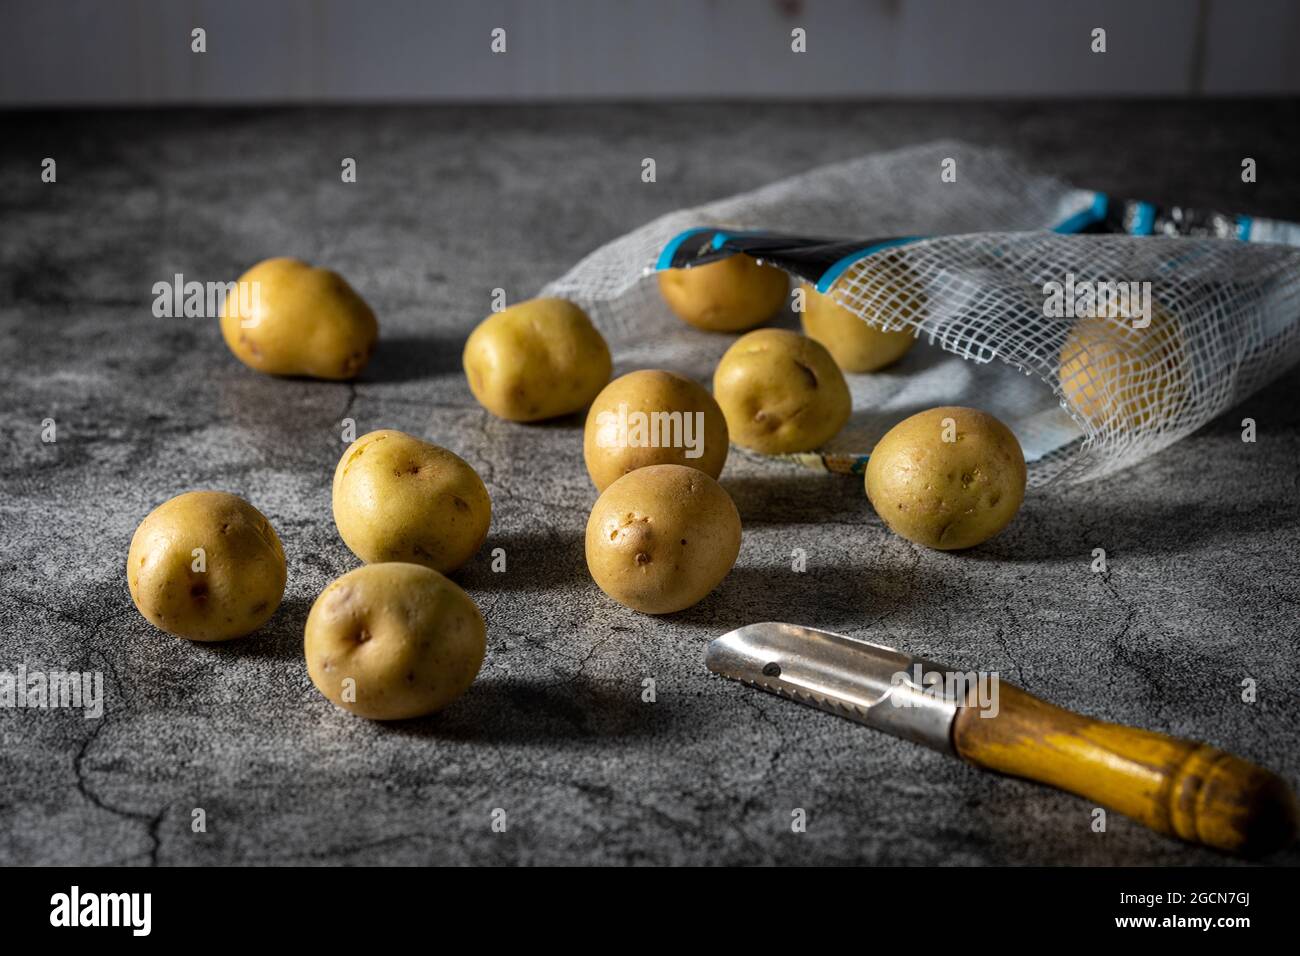 Raw baby yellow potatoes. Stock Photo